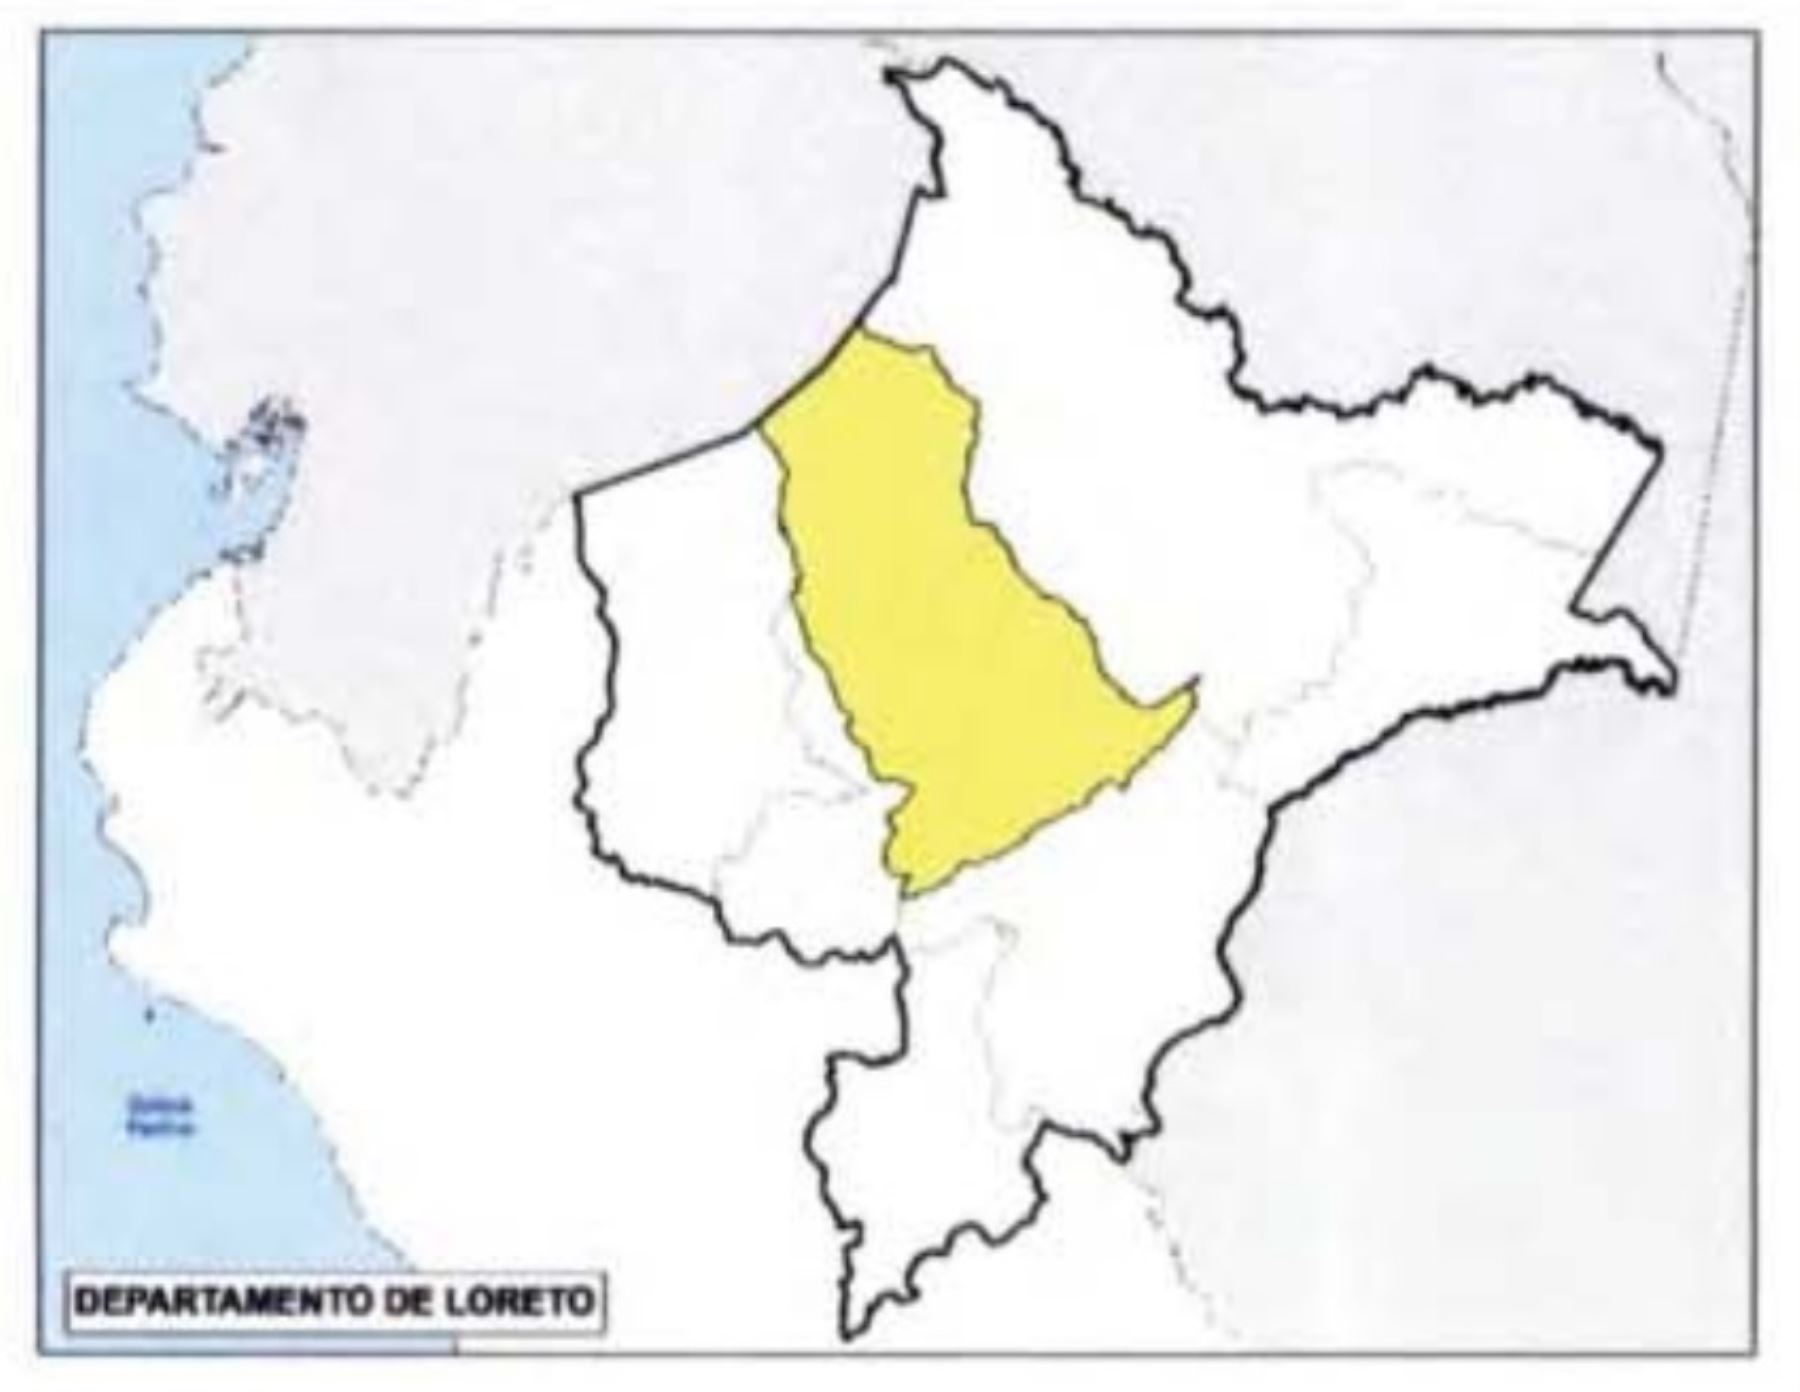 Mapa con la demarcación territorial de la provincia de Loreto